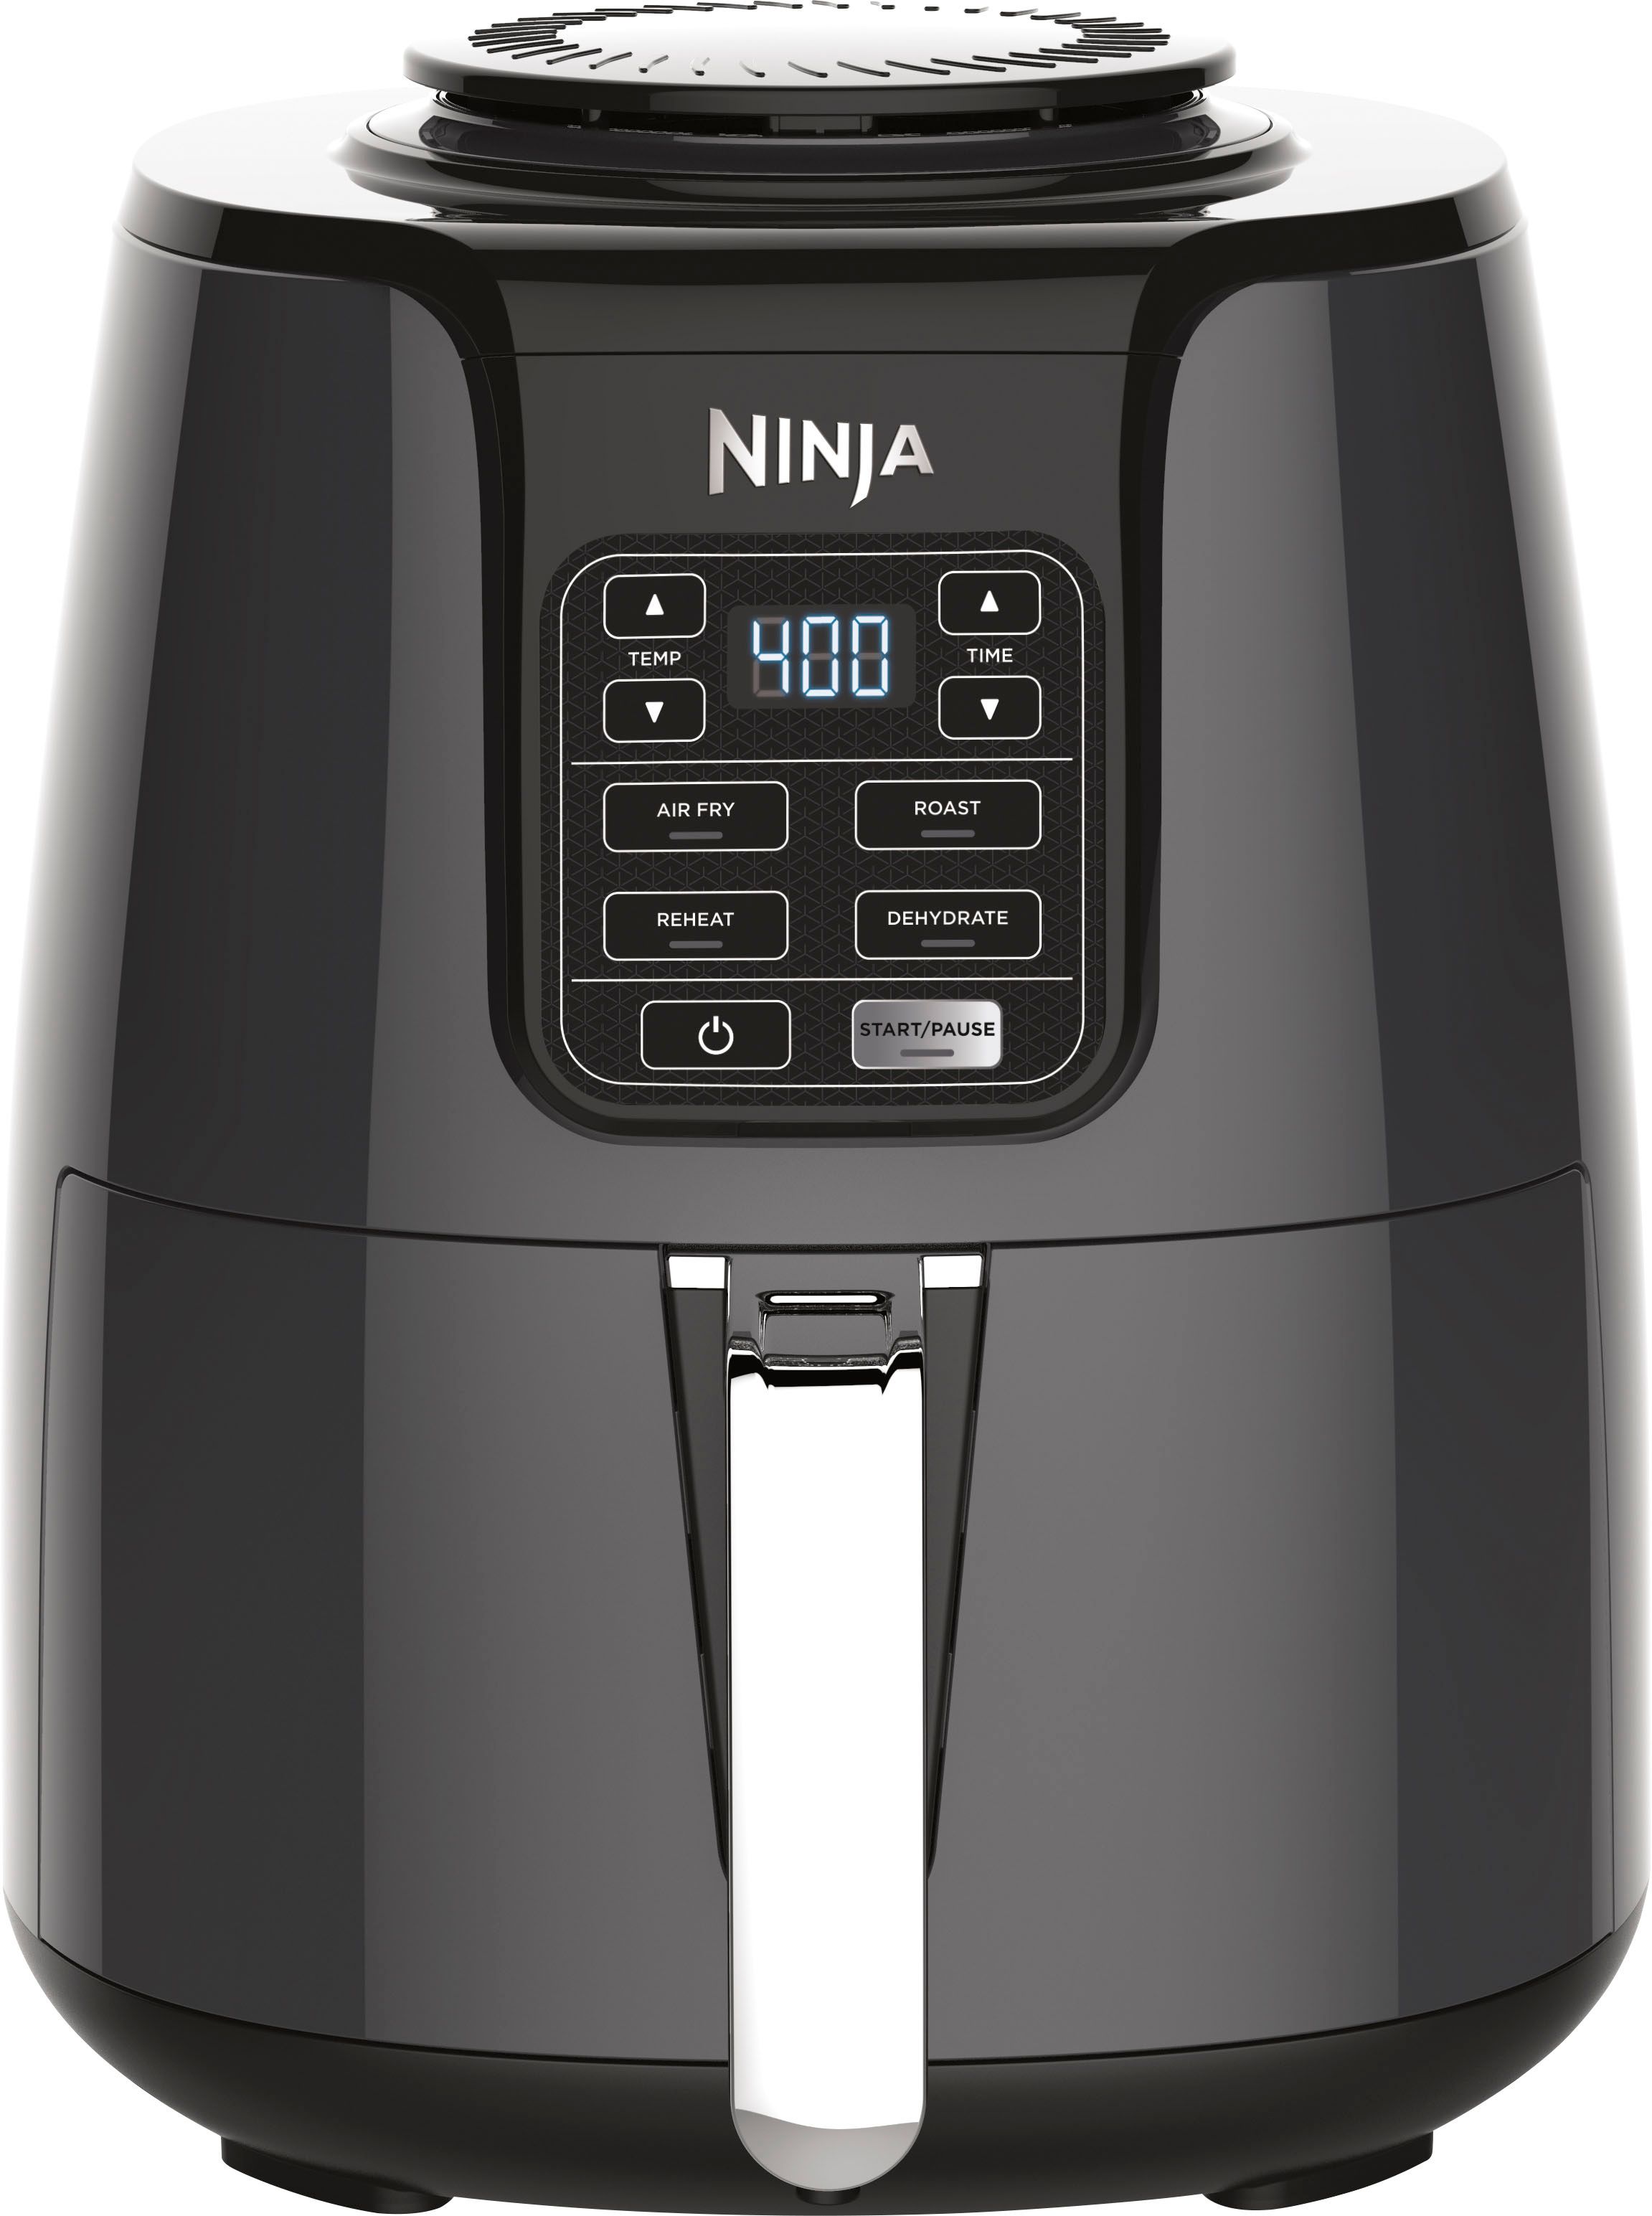 Ninja 4 qt. Digital Air Fryer Black AF101 - Best Buy | Best Buy U.S.